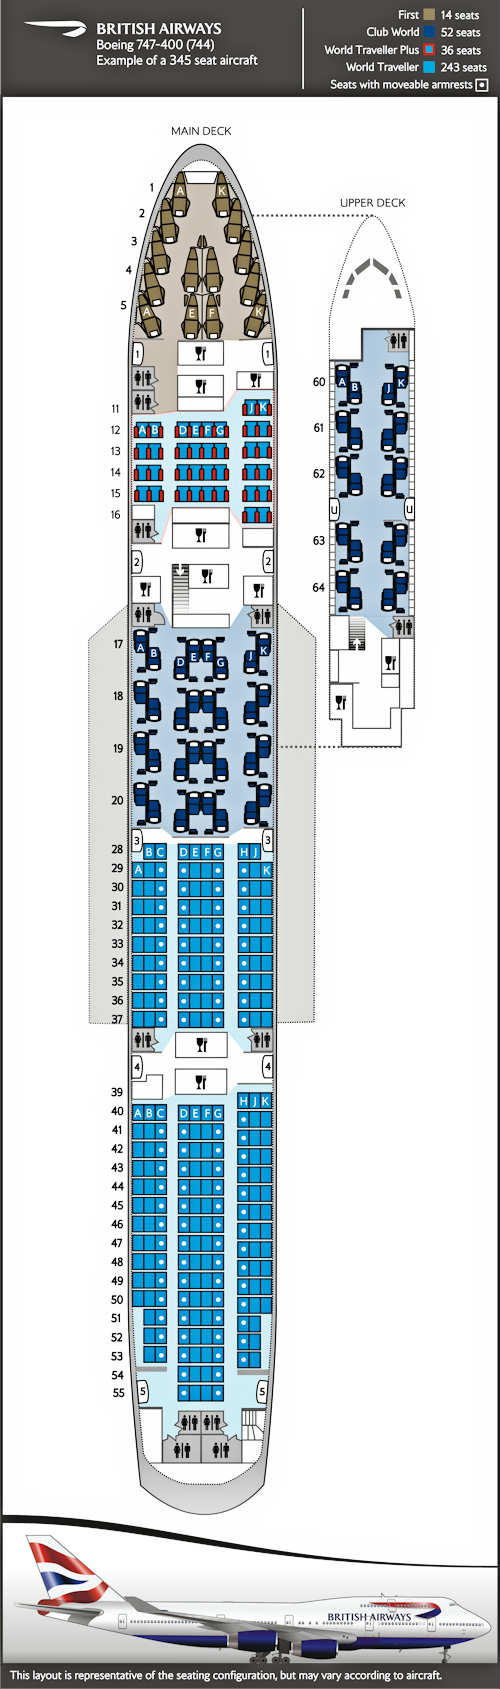 Sitzplan für Boeing 747-400, 4 Klassen 345 Sitzplätze.